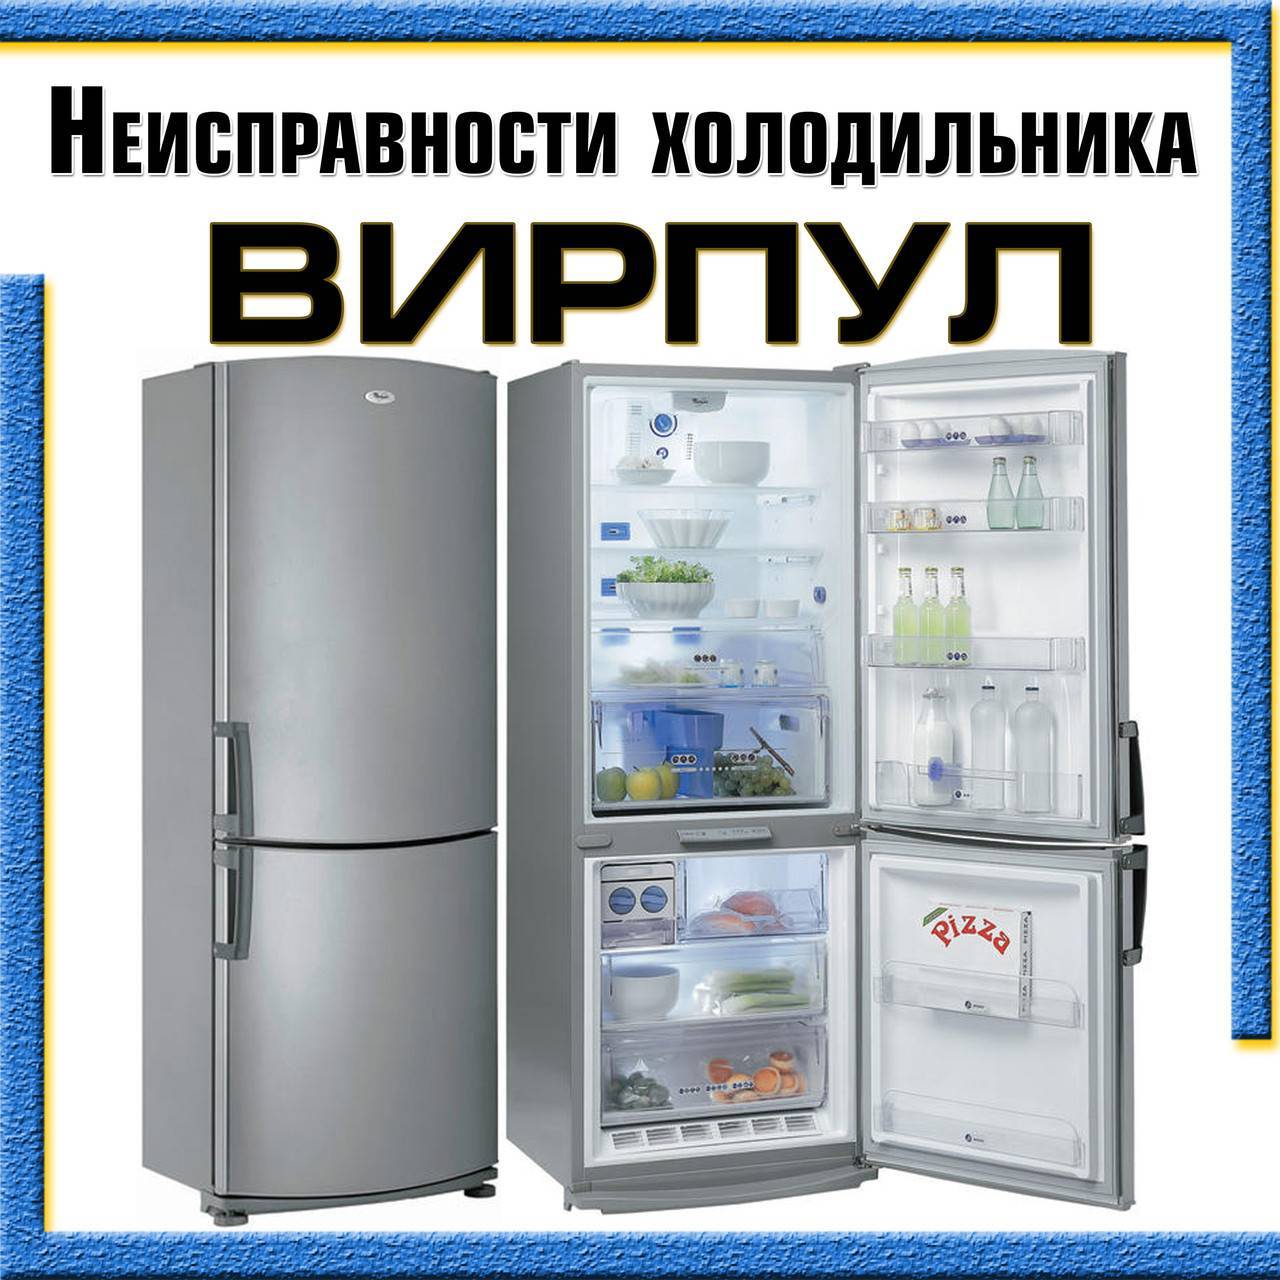 Возможные поломки холодильников Вирпул